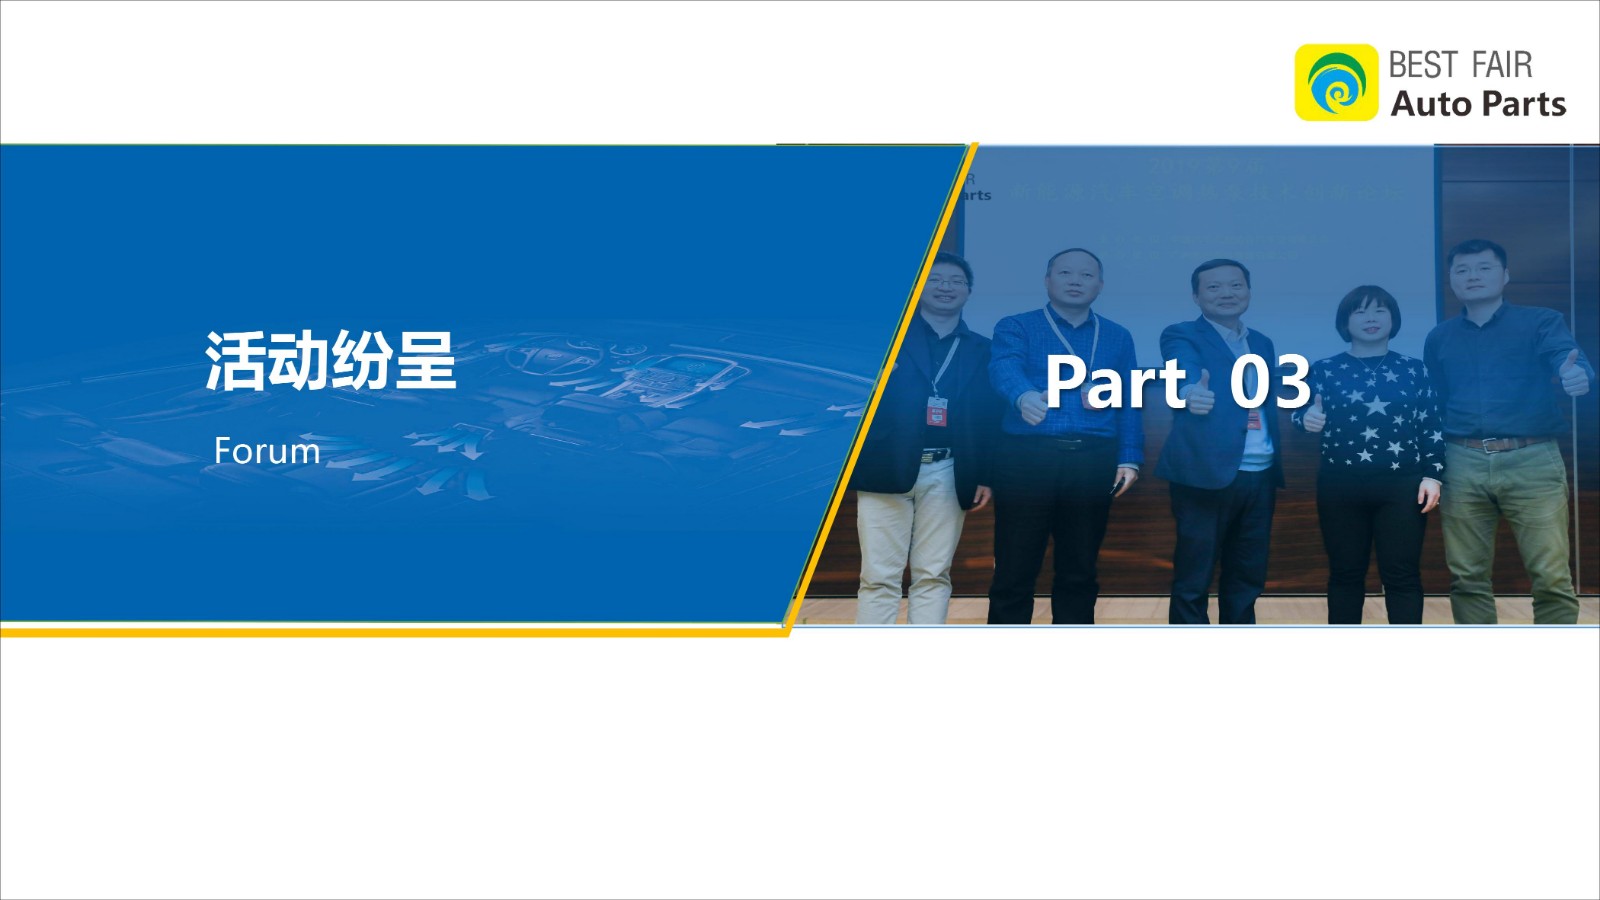 广州国际车用空调及冷藏技术展览会